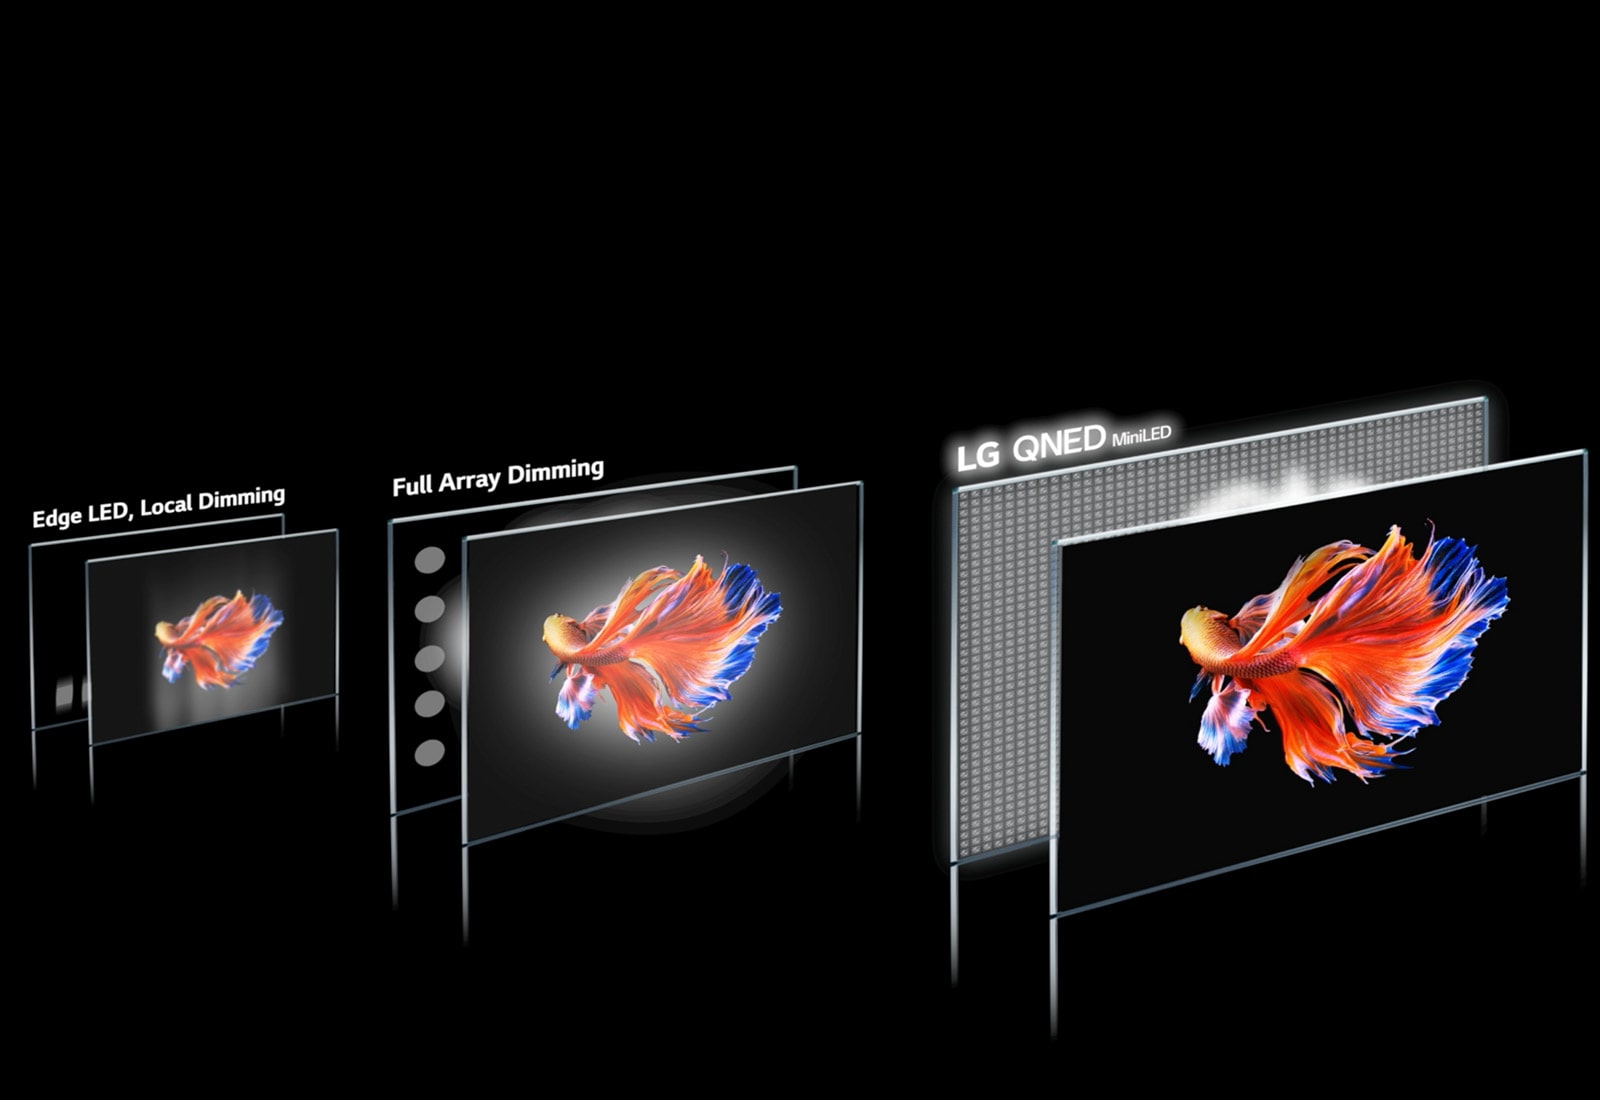 Slika tehnologije območja slabljenja in siamske lovske ribe na črnem ozadju na treh različnih zaslonih.  Slika na LG QNED Mini LED je najbolj jasna in ima najmanj halo in svetlejših barv (predvajajte video).